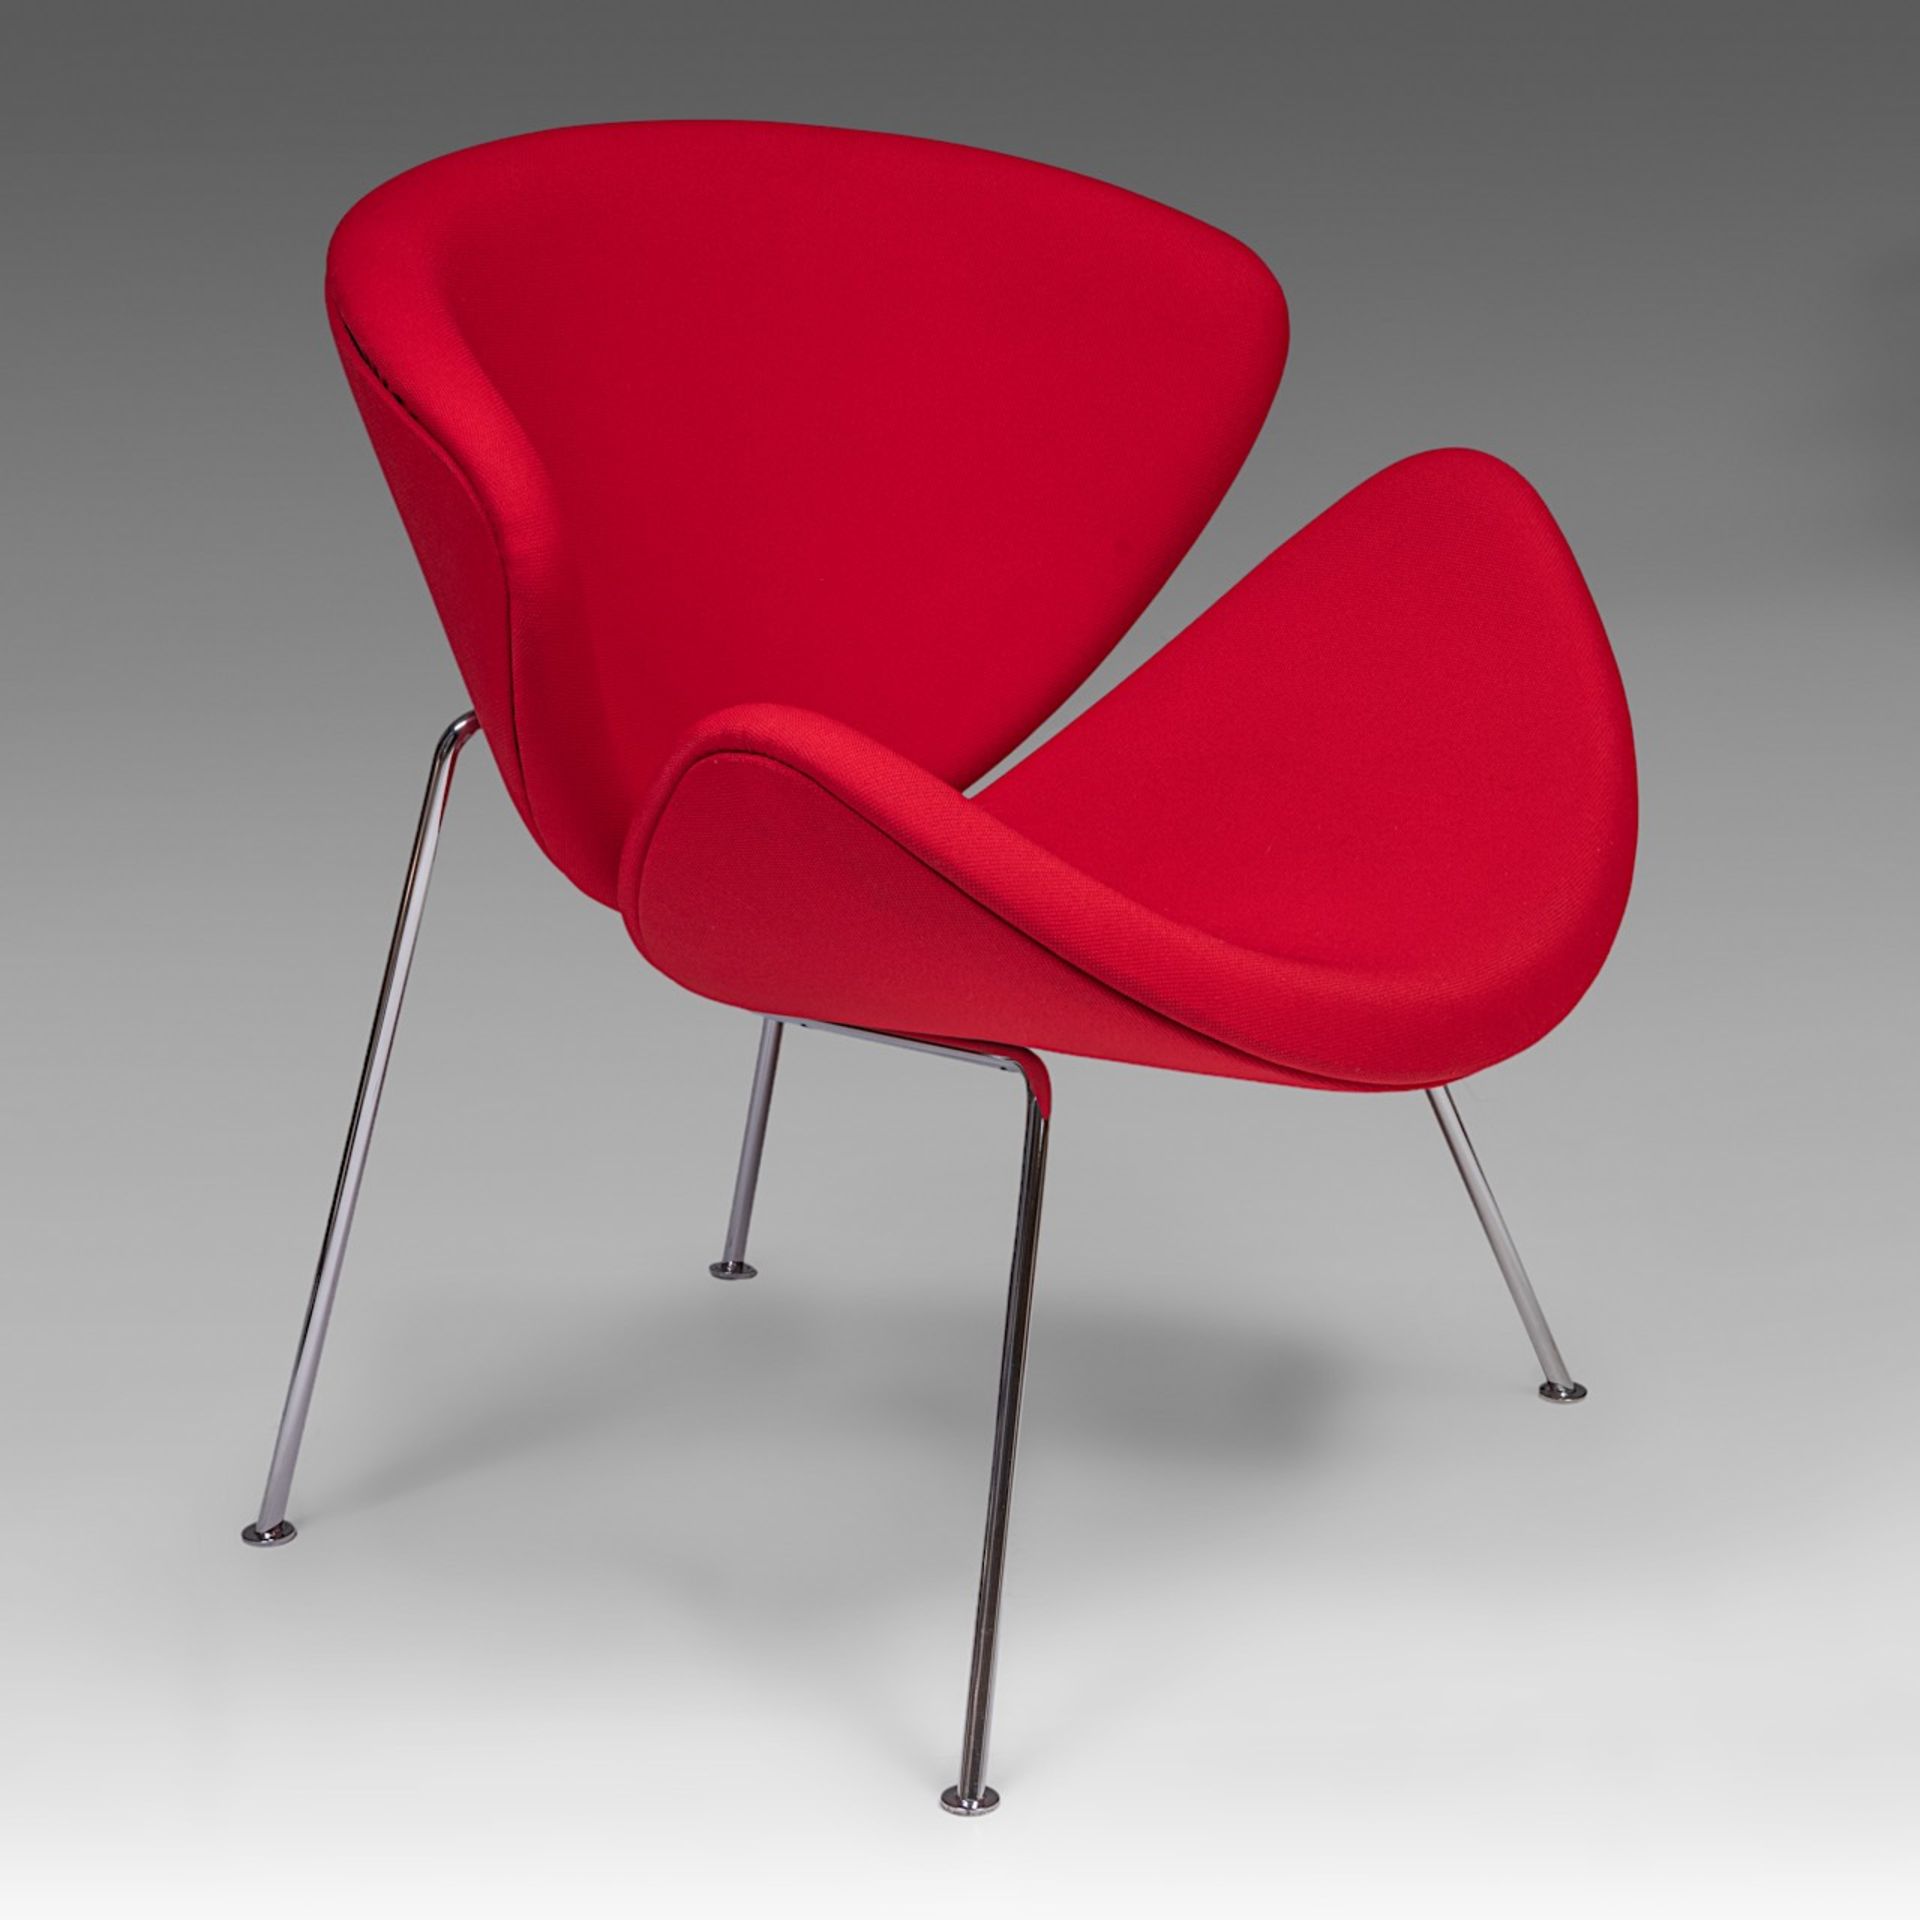 An Orange Slice chair by Pierre Pauline for Artifort, H 85 - W 82 cm - Bild 2 aus 9